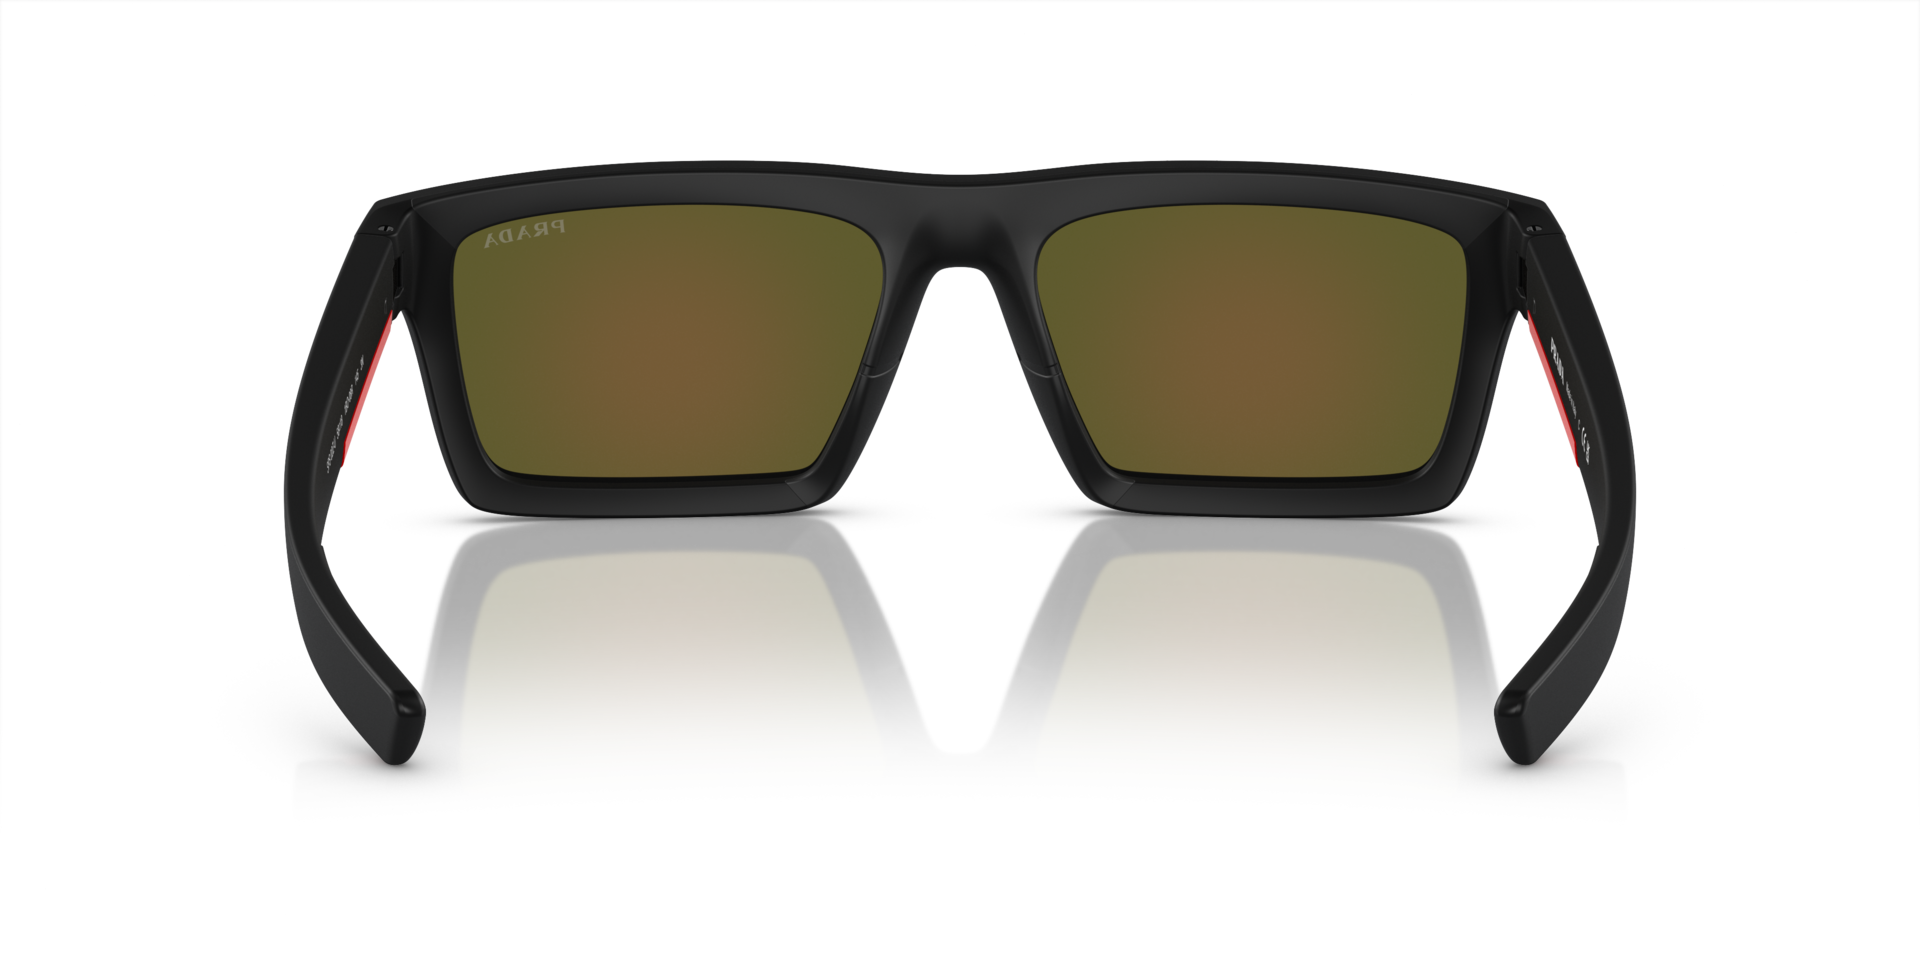 Das Bild zeigt die Sonnenbrille PS02ZSU 1BO08R von der Marke Prada Linea Rossa in schwarz.